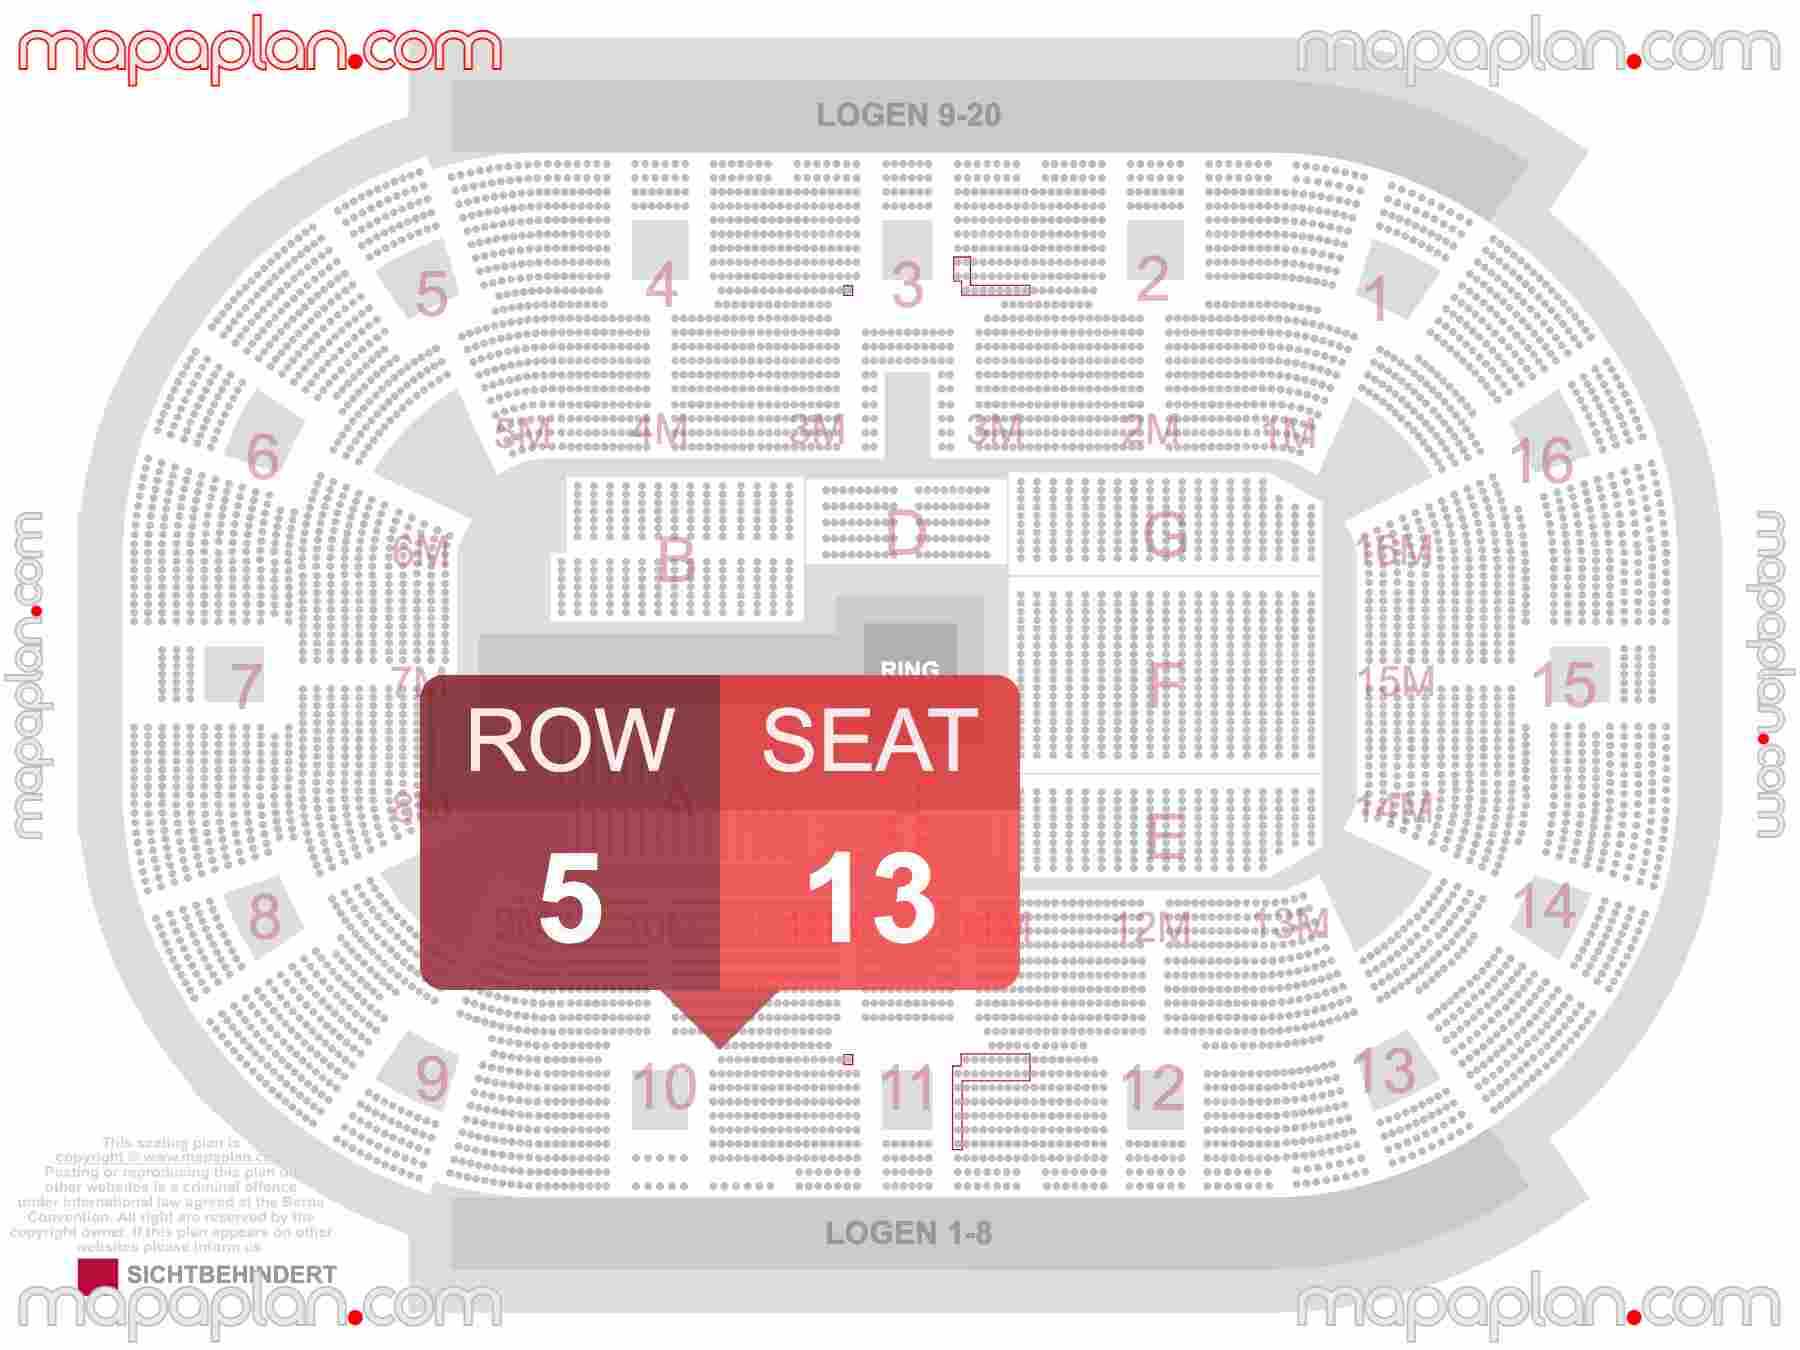 Stuttgart Porsche Arena seating plan Concert & WWE Konzerte 360 Innenraum Sitzplätze Übersichtsplan - Sitzplan mit Sitzplatz & Reihennummerierung detailed seat numbers and row numbering plan with interactive map map layout